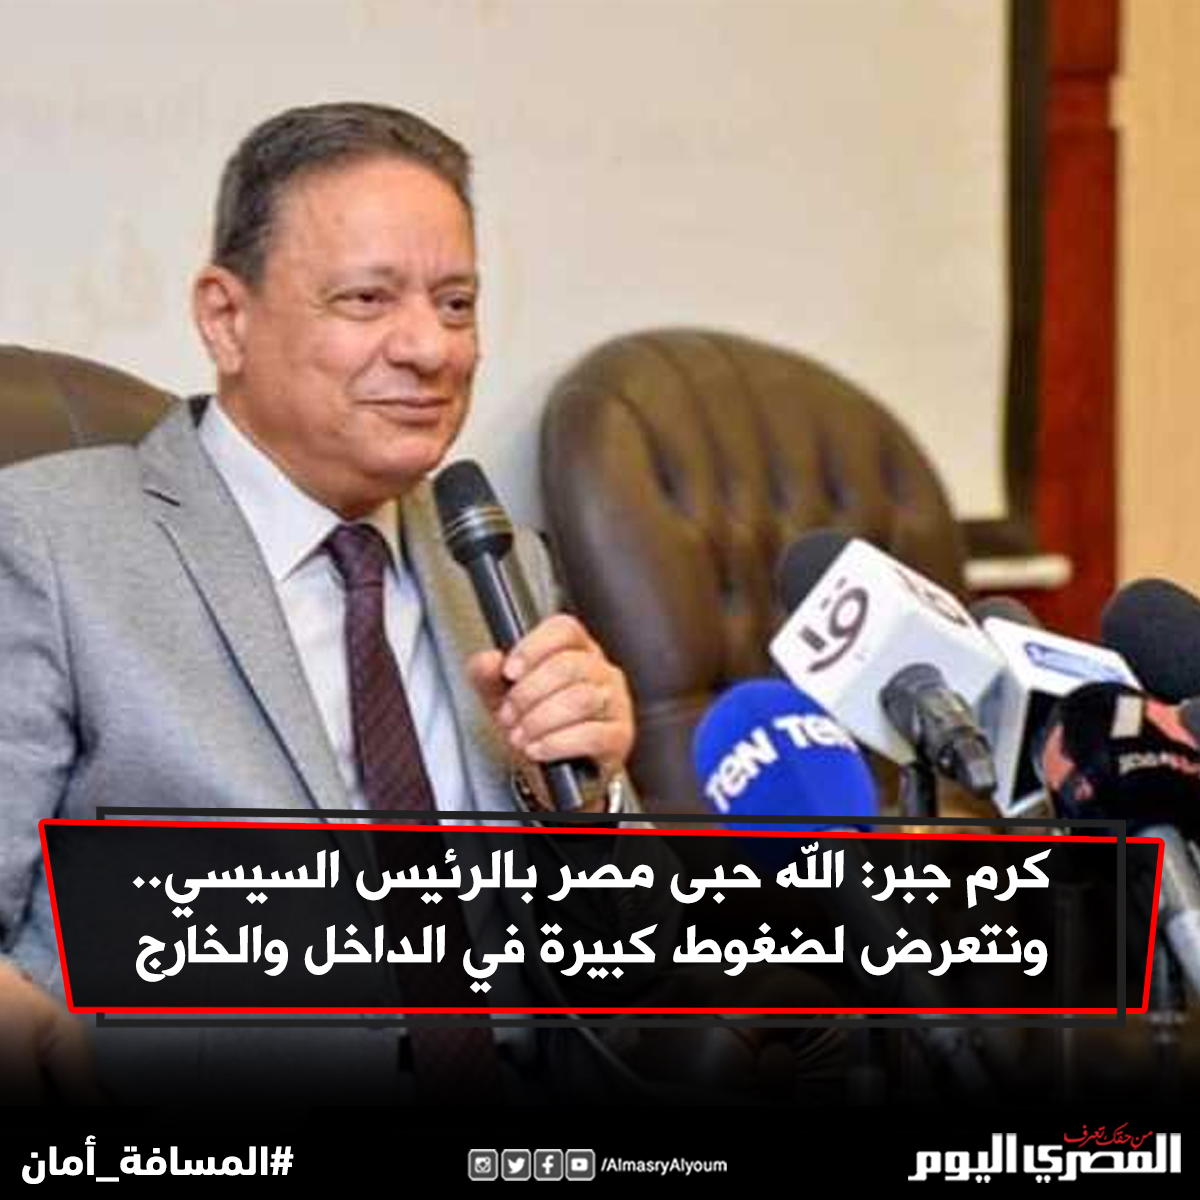 كرم جبر الله حبى مصر بالرئيس السيسي.. ونتعرض لضغوط كبيرة في الداخل والخارج التفاصيل